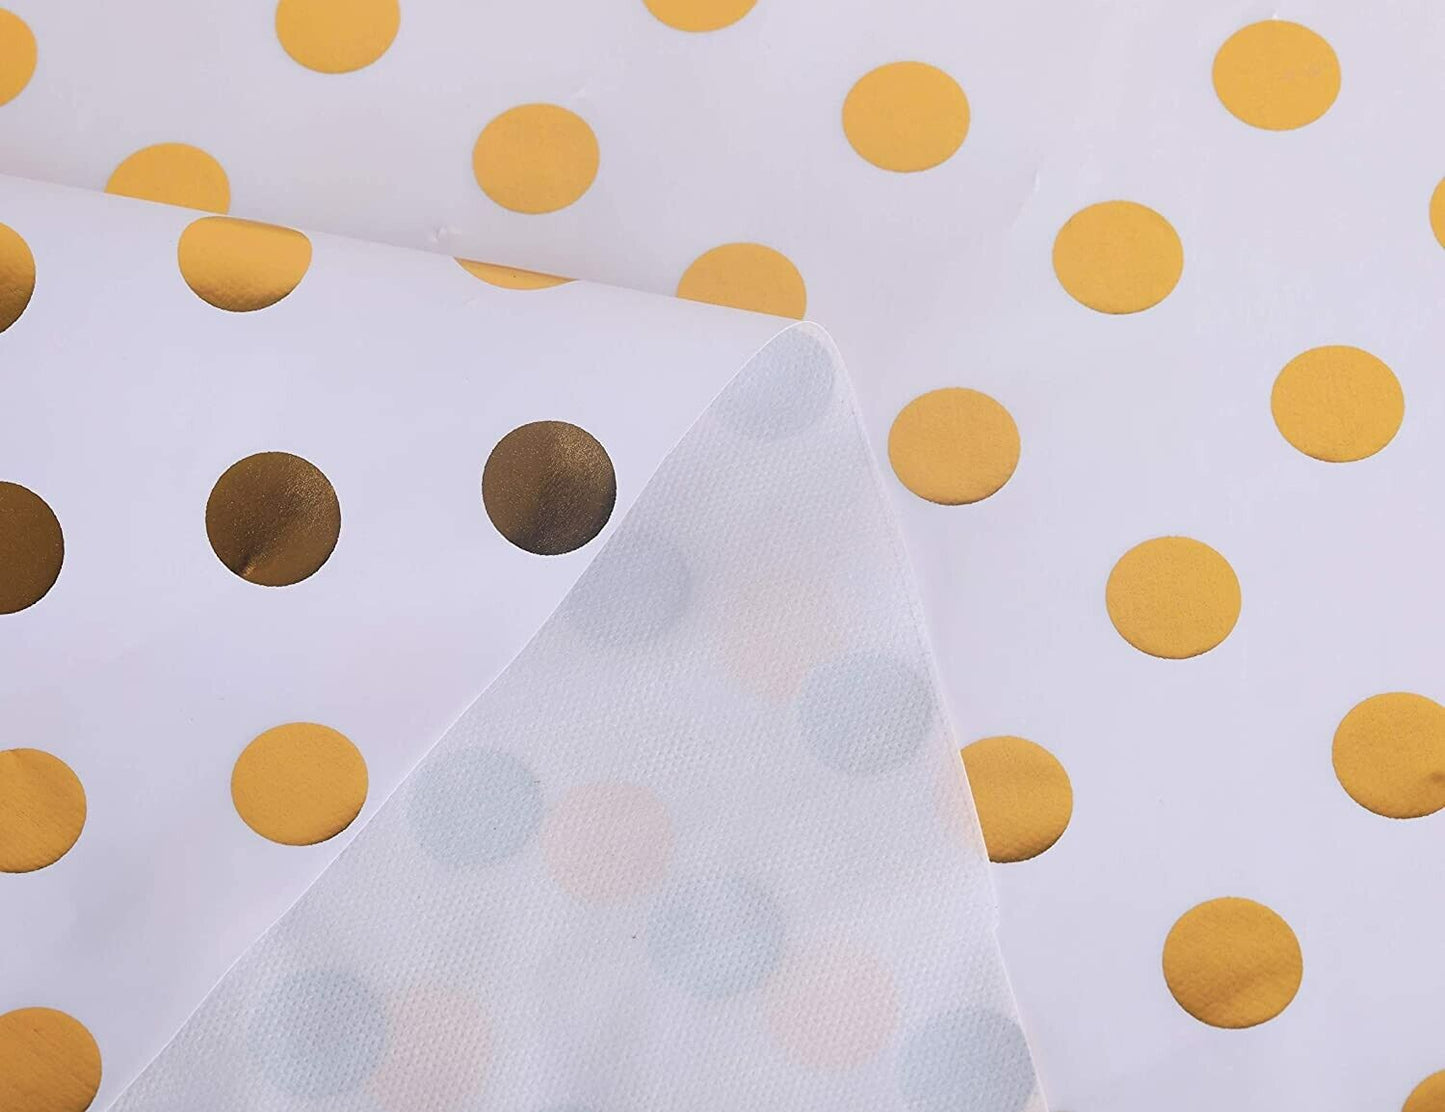 Vinyl Metallic Gold Polka Dot on White Easy Wipe Clean PVC Tablecloth